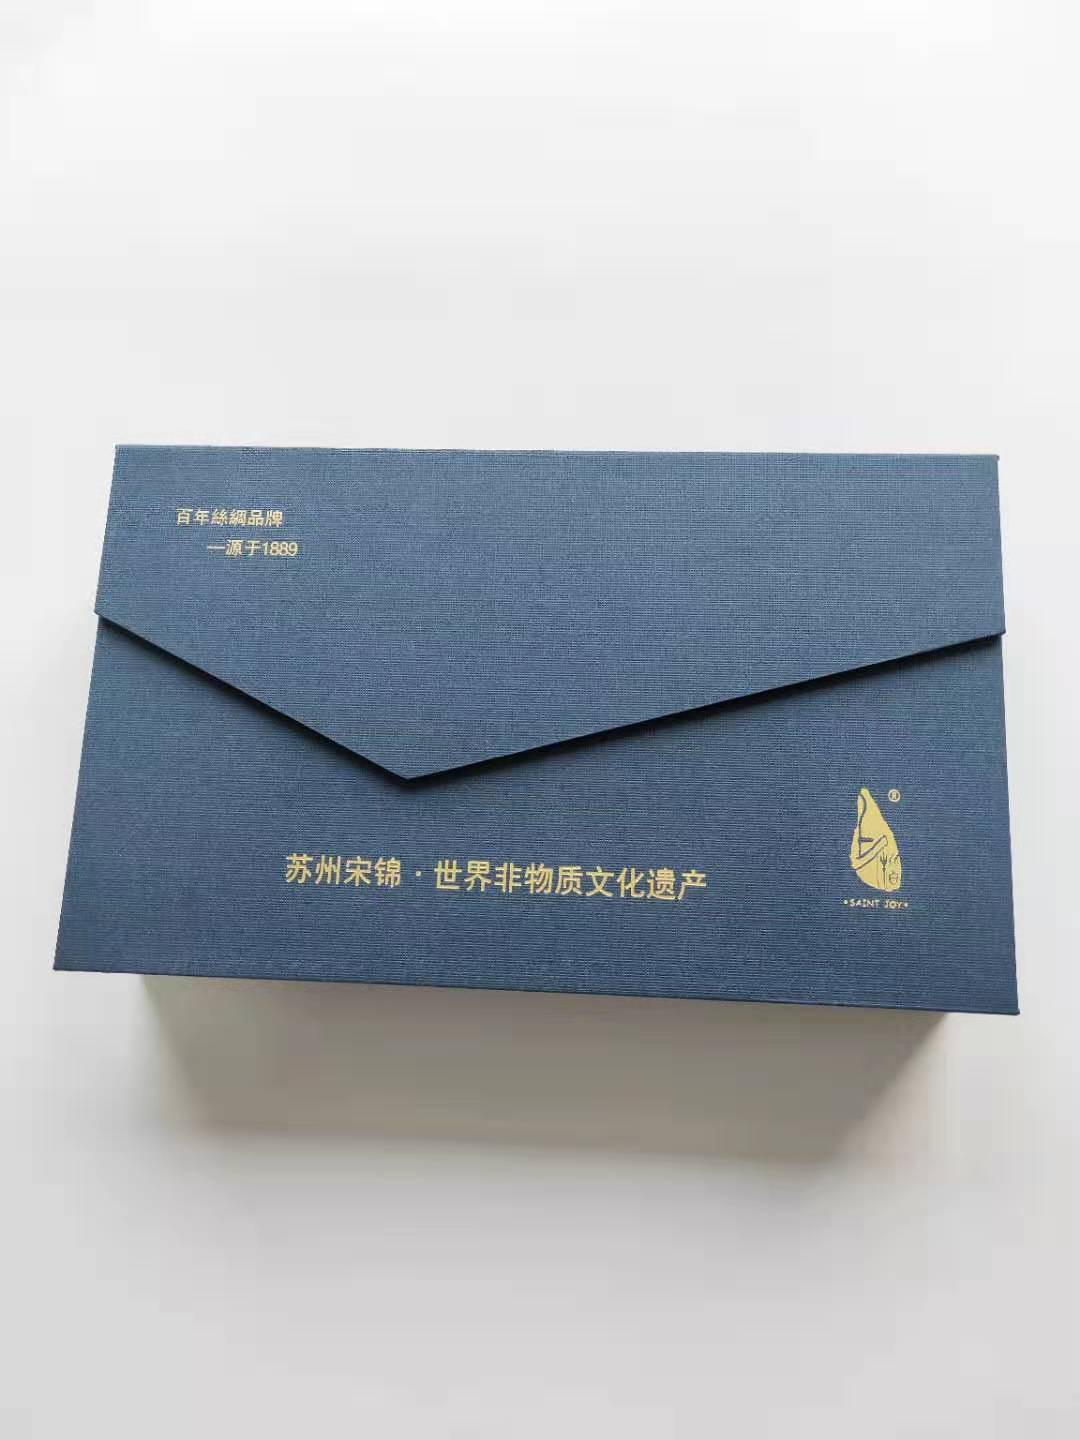 上海久永包装材料有限公司-中国上海国际包装展展览会